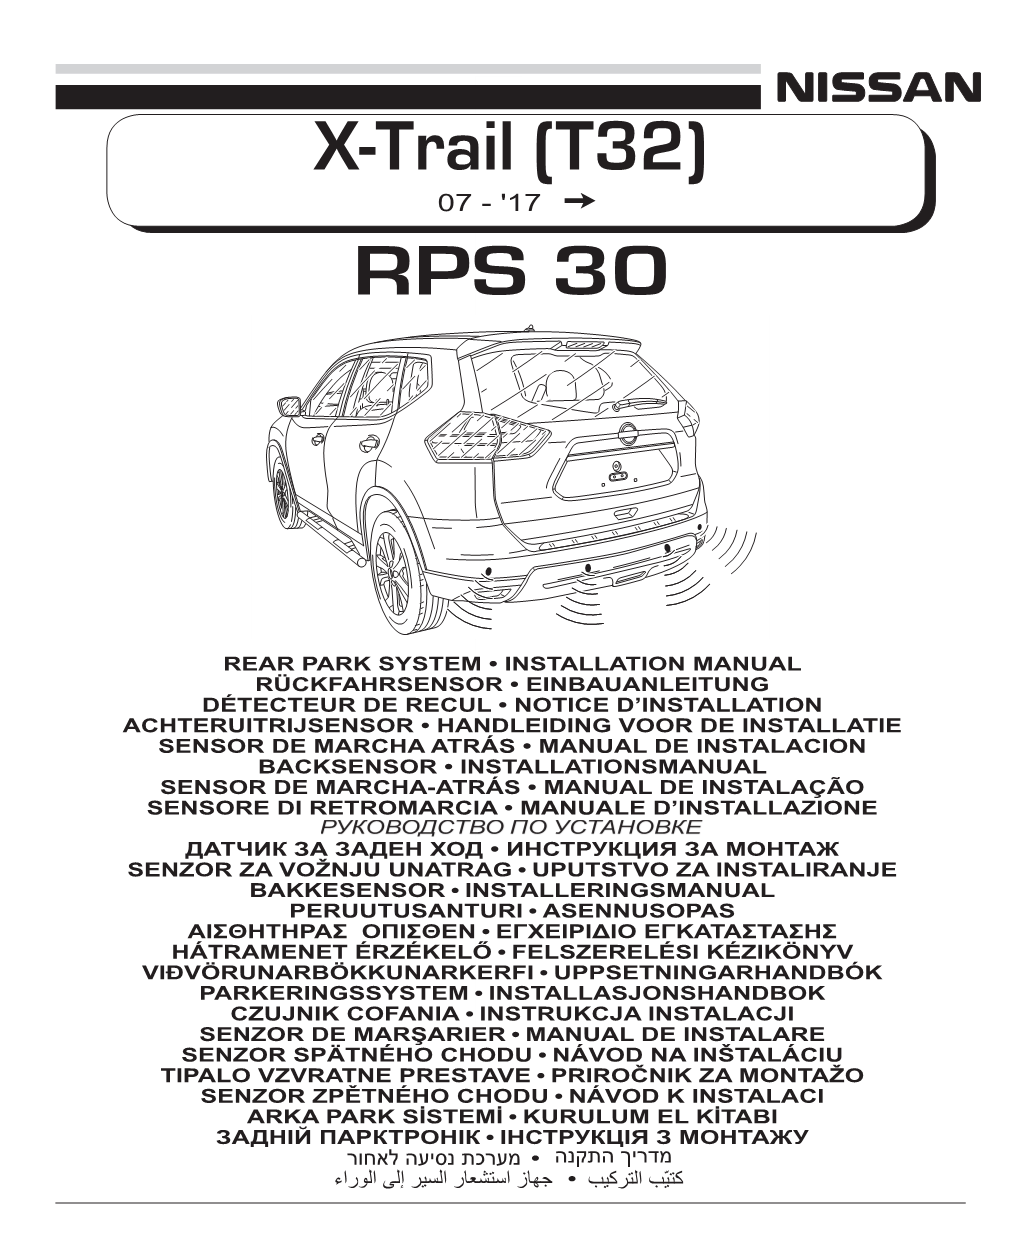 RPS 30 X-Trail (T32)